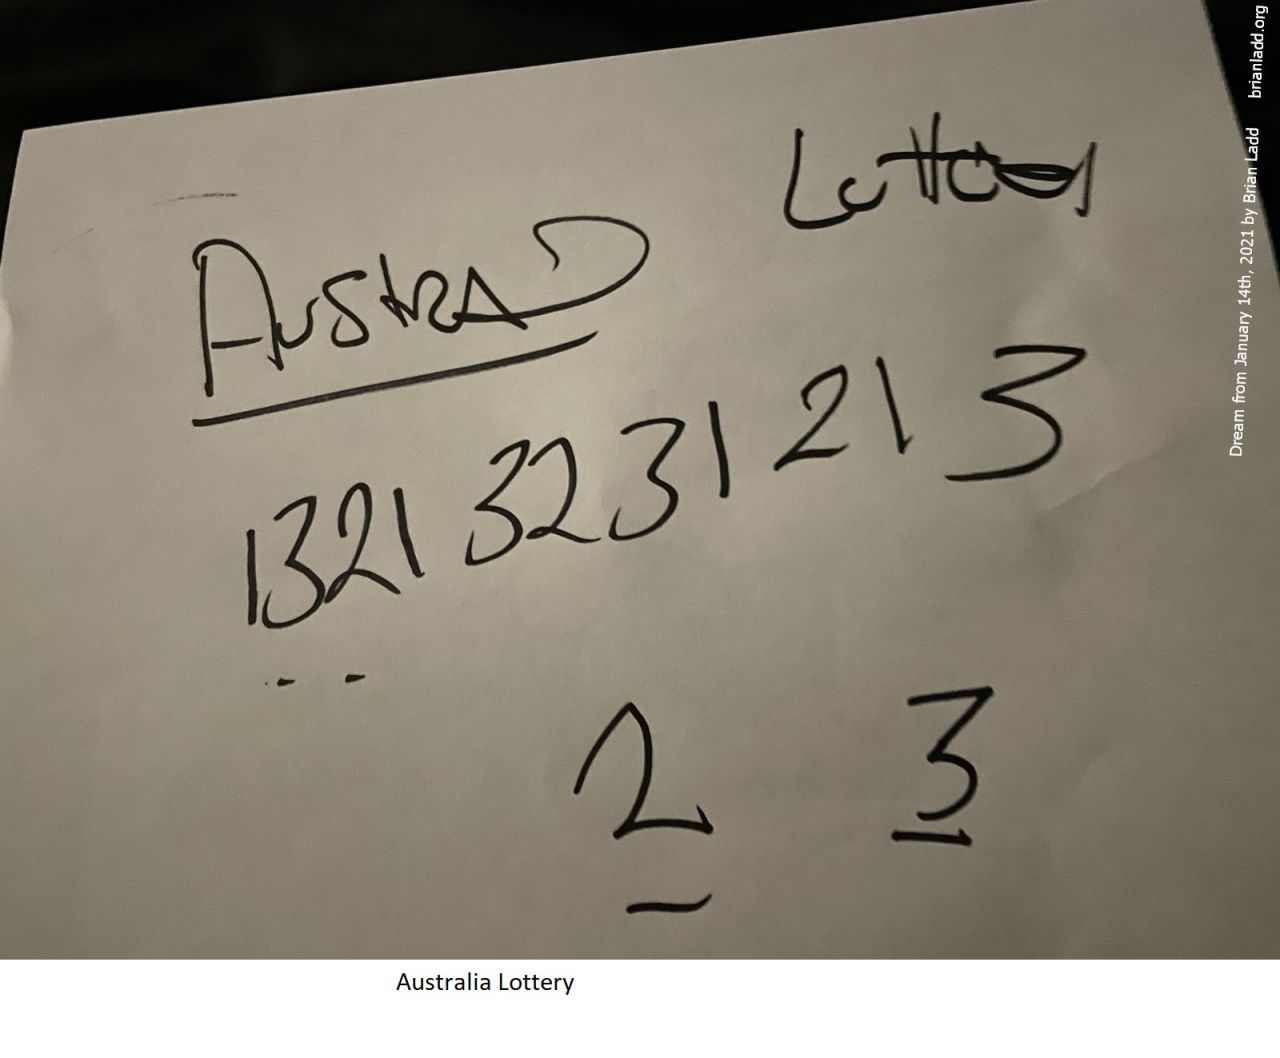 14 jan 2022 2 Australia Lottery...
Australia Lottery.
